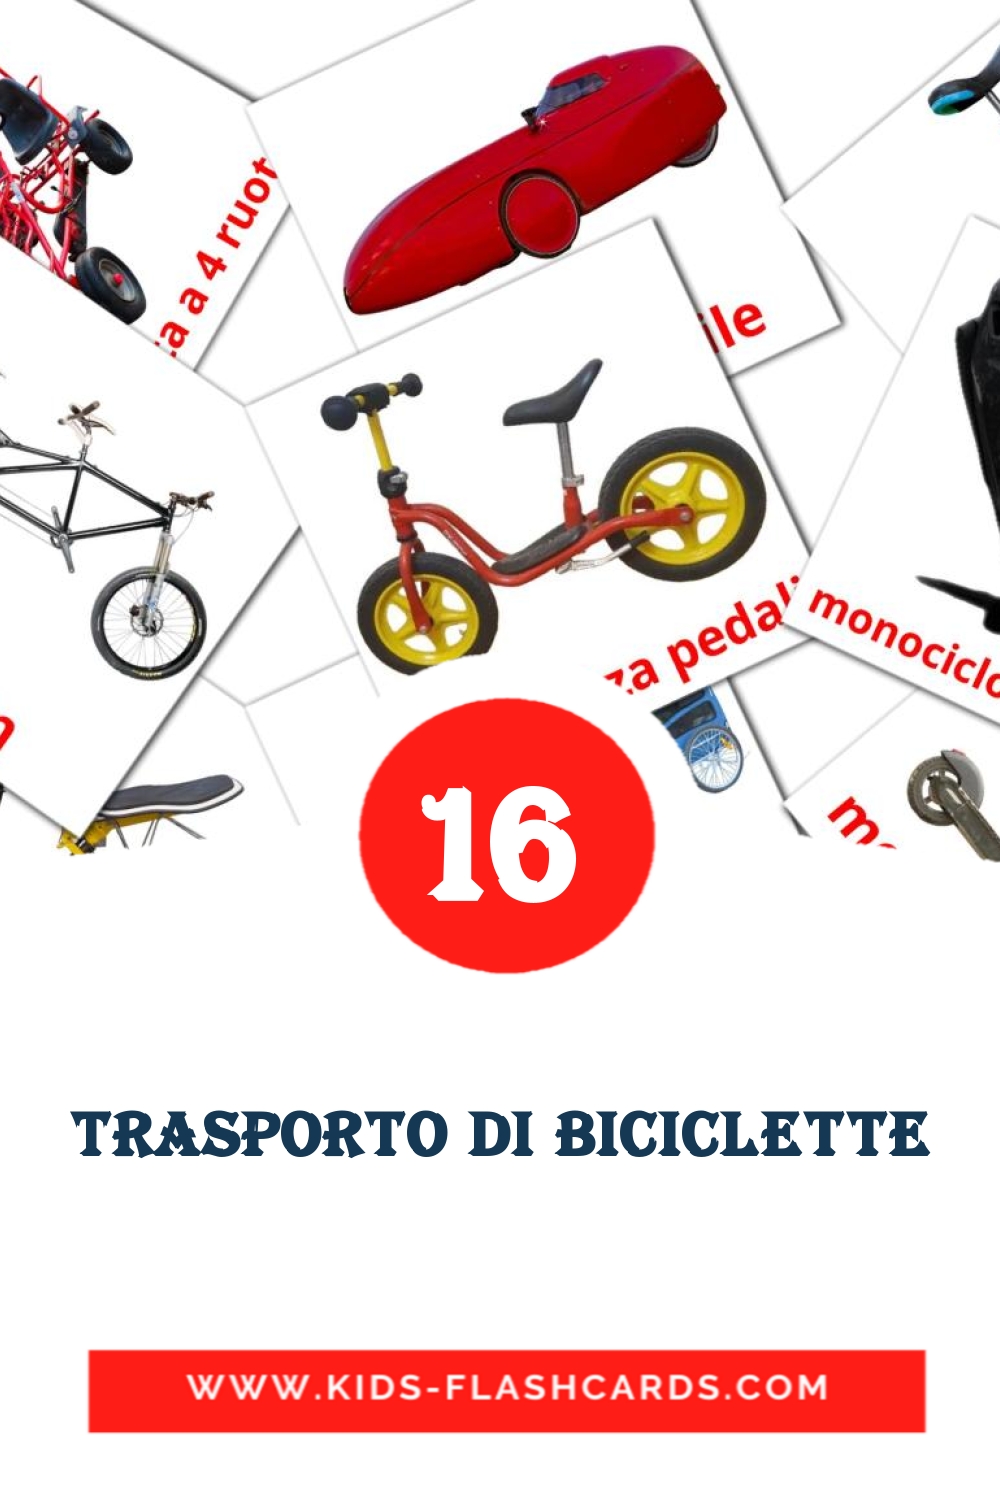 16 Trasporto di biciclette Bildkarten für den Kindergarten auf Italienisch